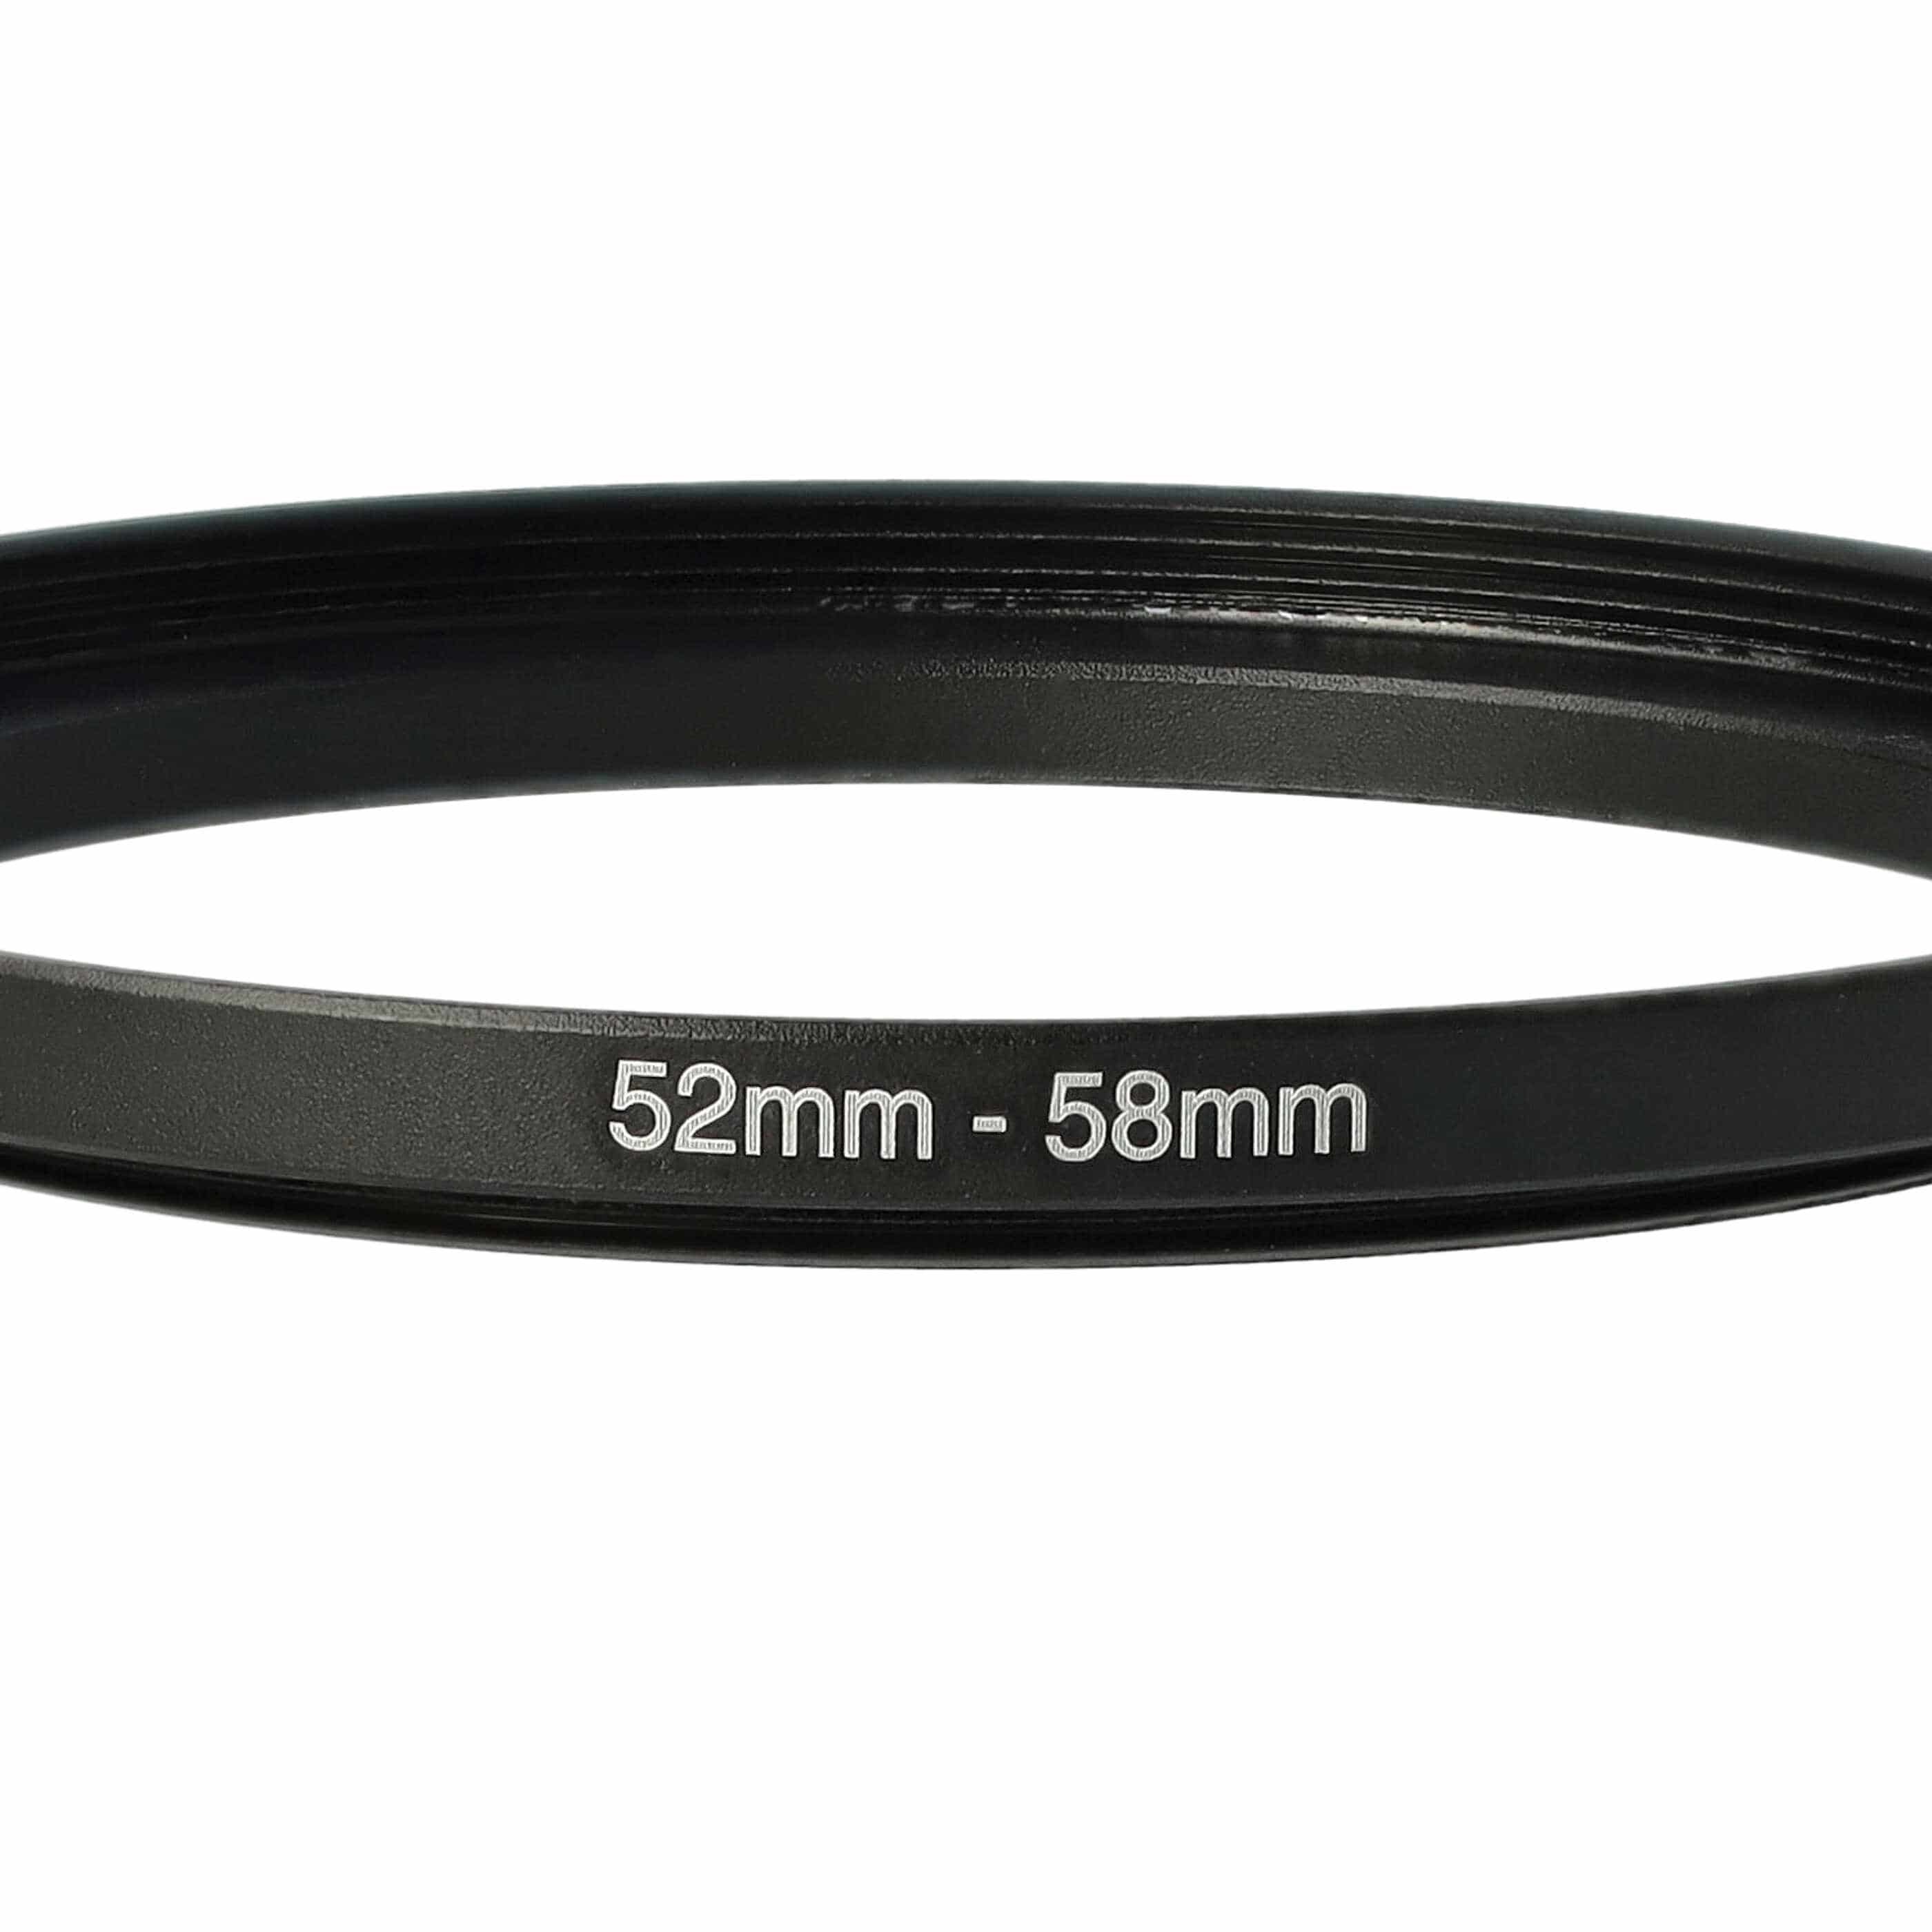 Step-Up-Ring Adapter 52 mm auf 58 mm passend für diverse Kamera-Objektive - Filteradapter